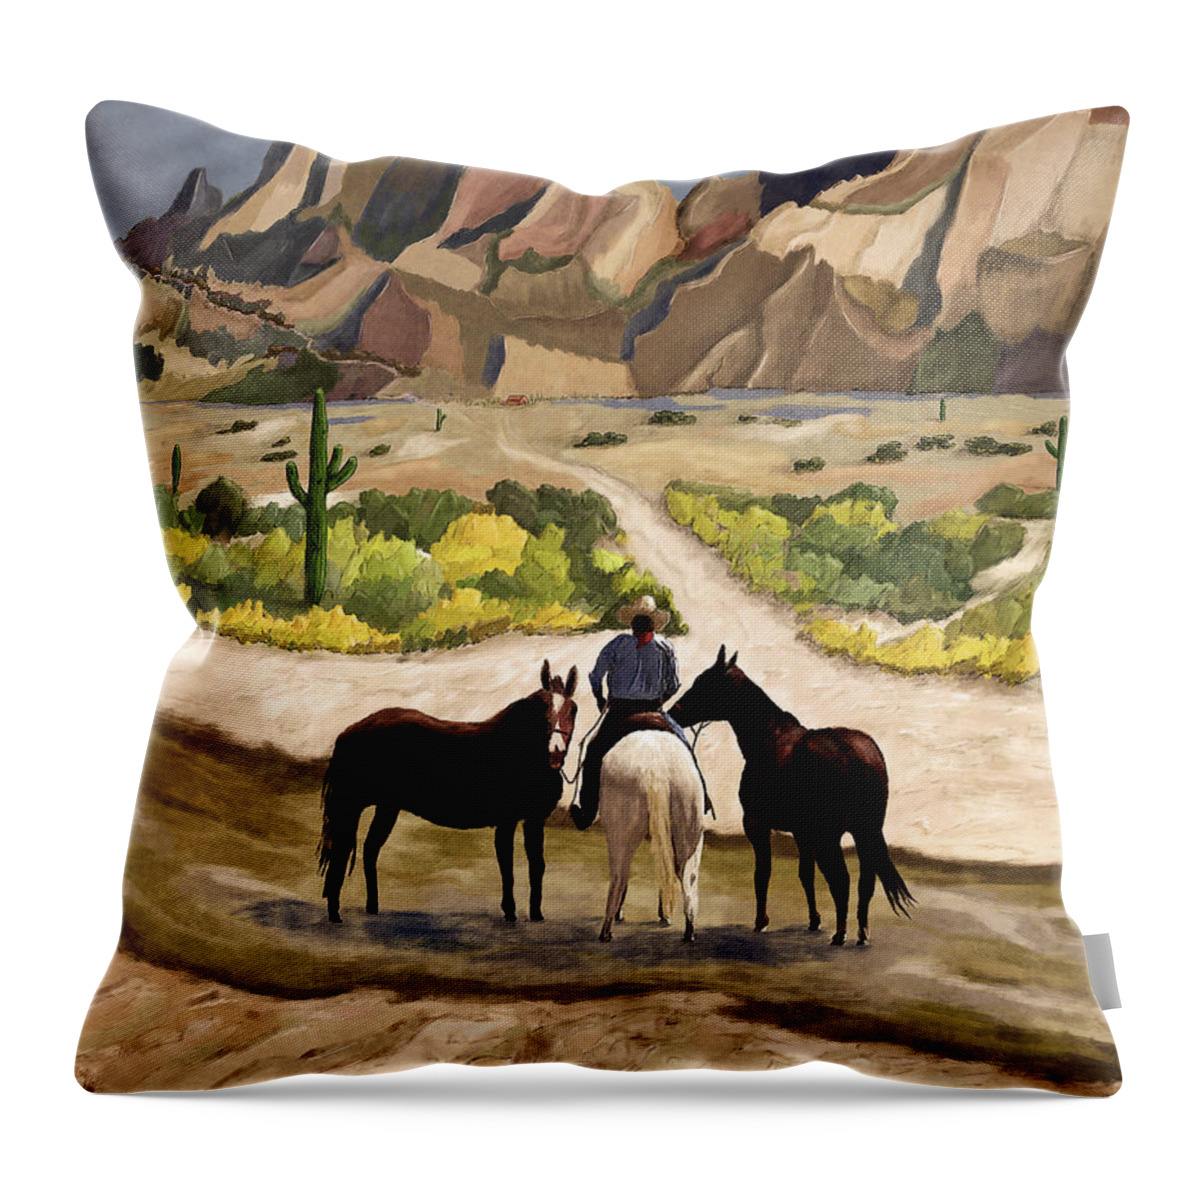 Horses Throw Pillow featuring the digital art Desert Horses by Ken Taylor